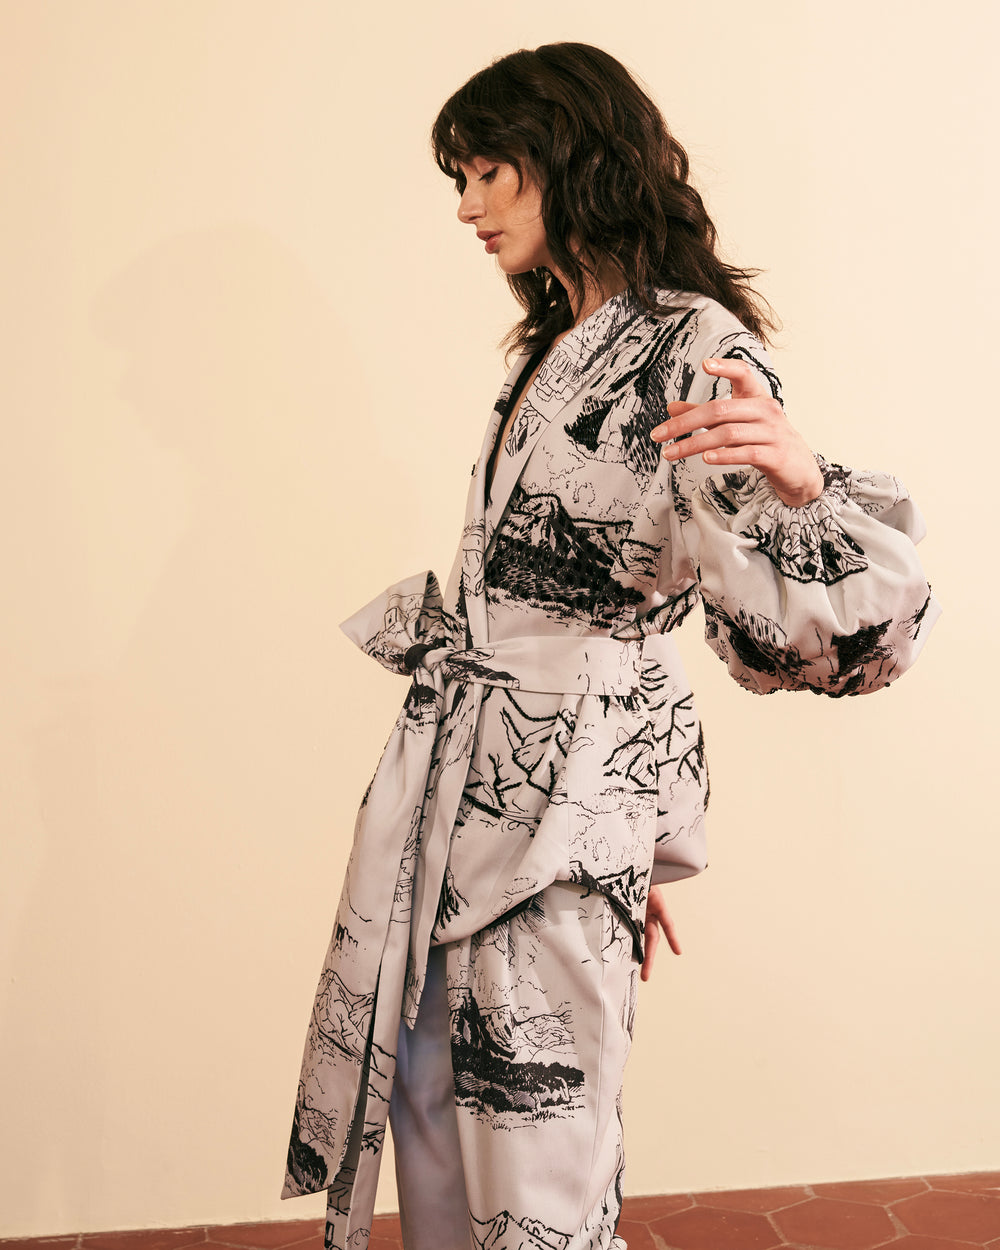 Kimono sketches